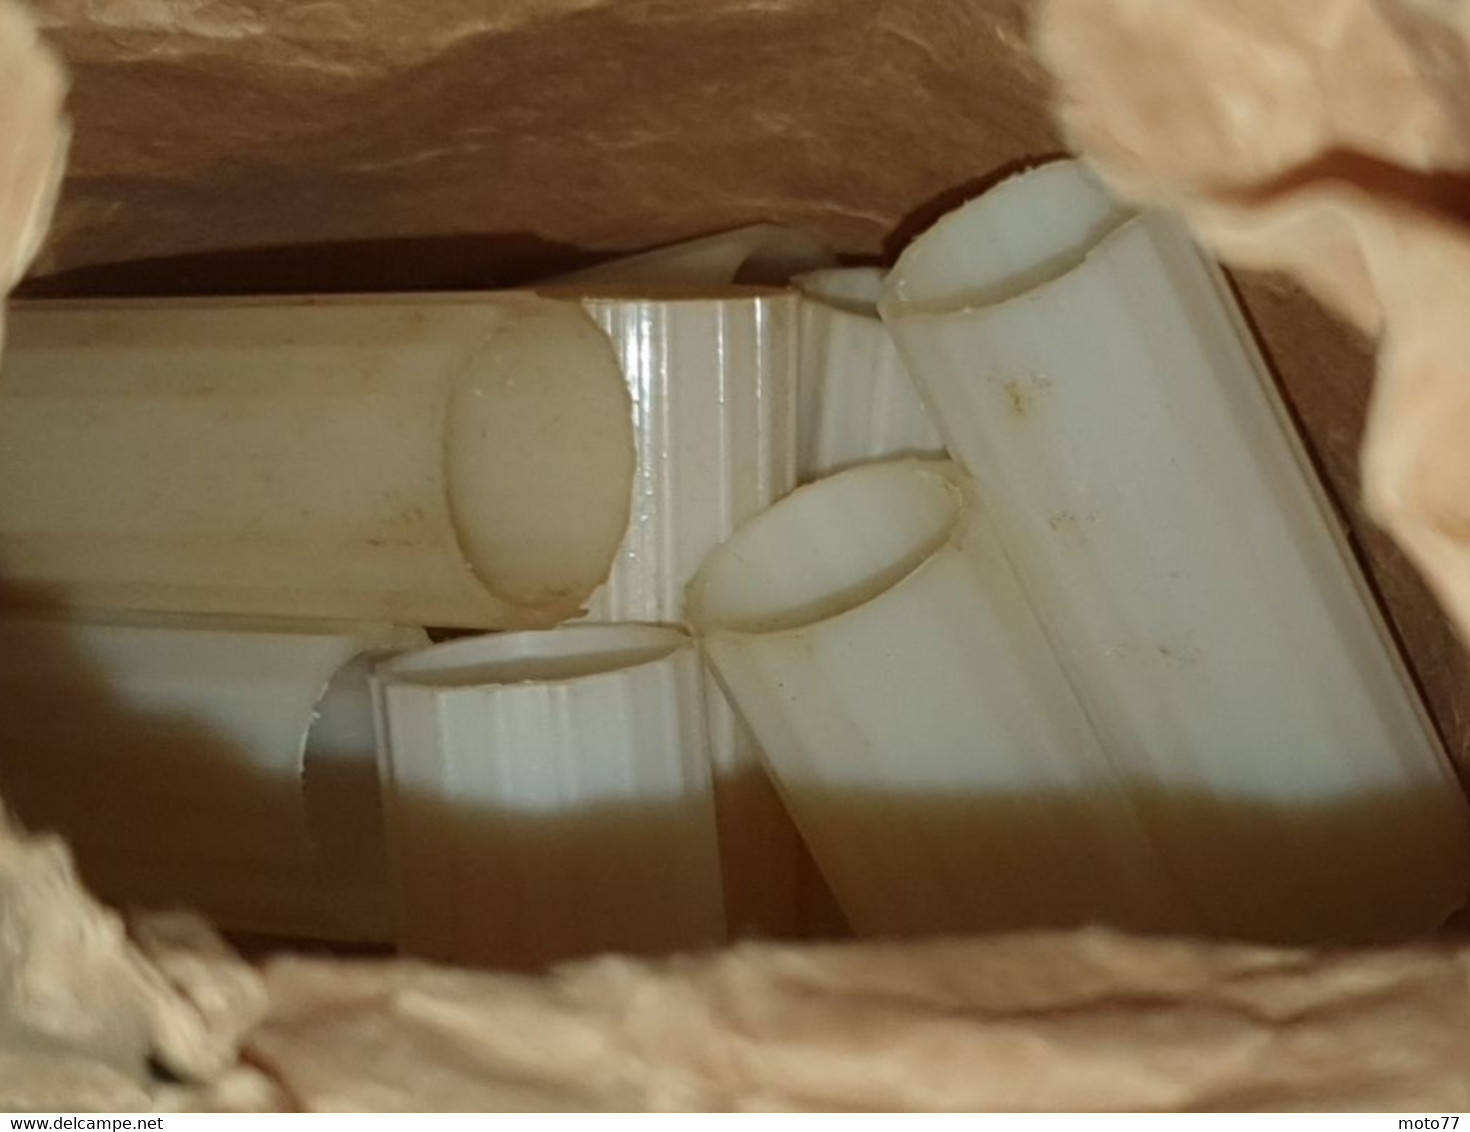 Ancienne BOITE de 50 MANCHONS en PLASTIQUE blanc ivoire - Pour relier ensemble des tubes électriques - vers 1960